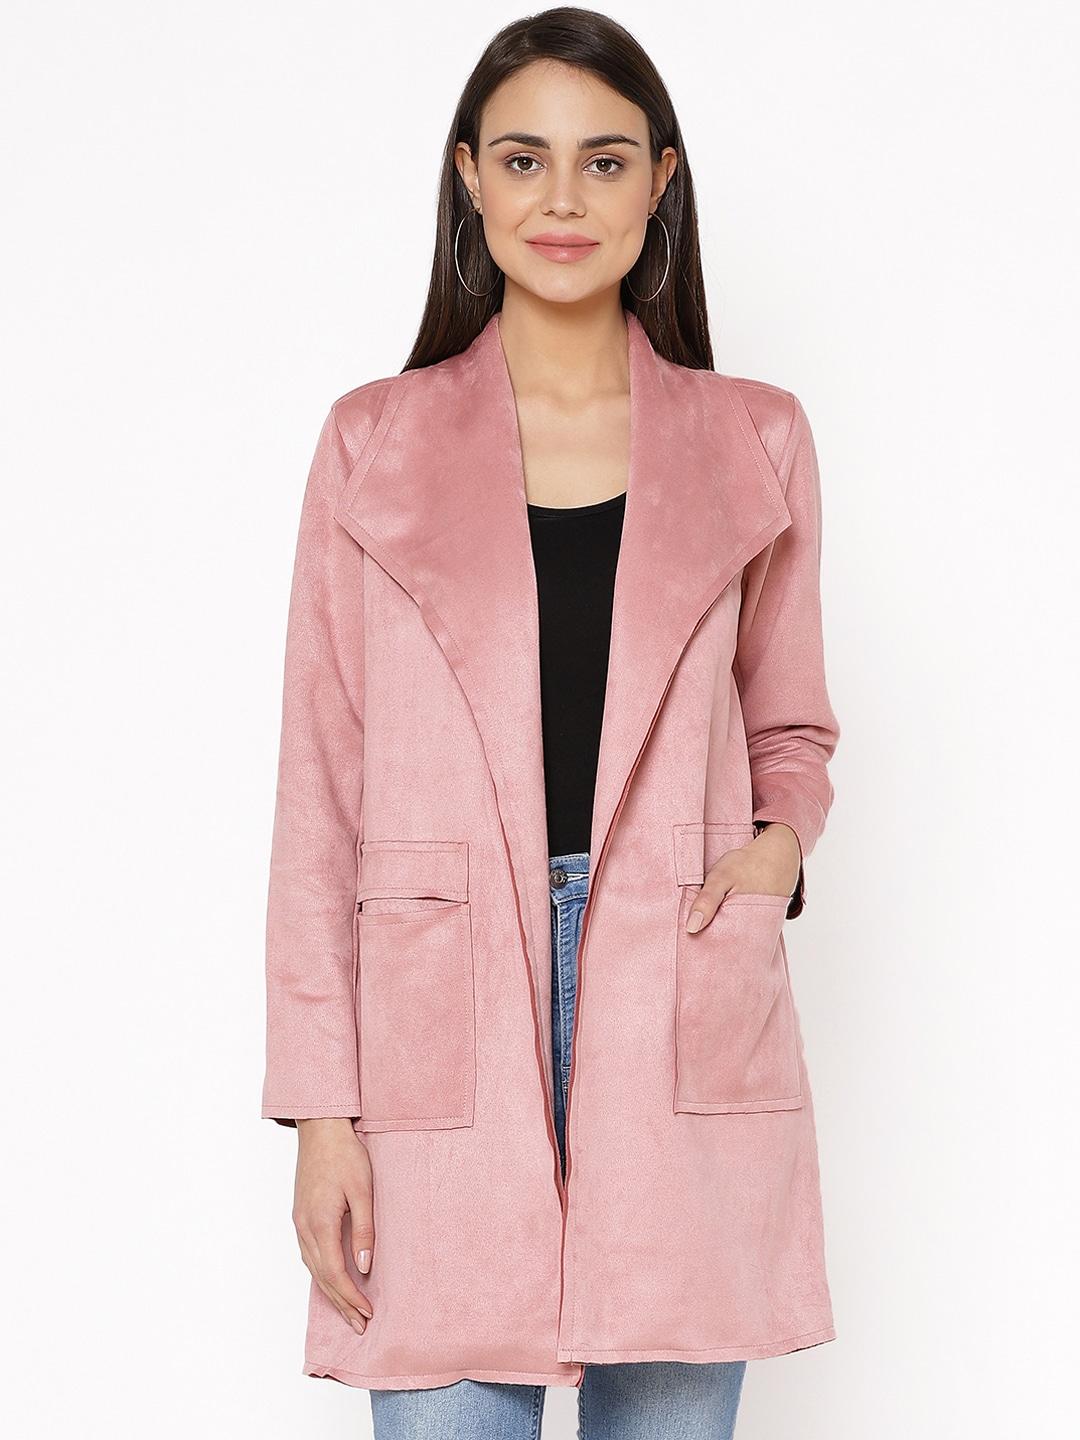 carlton-london-women-pink-suede-solid-open-front-longline-jacket